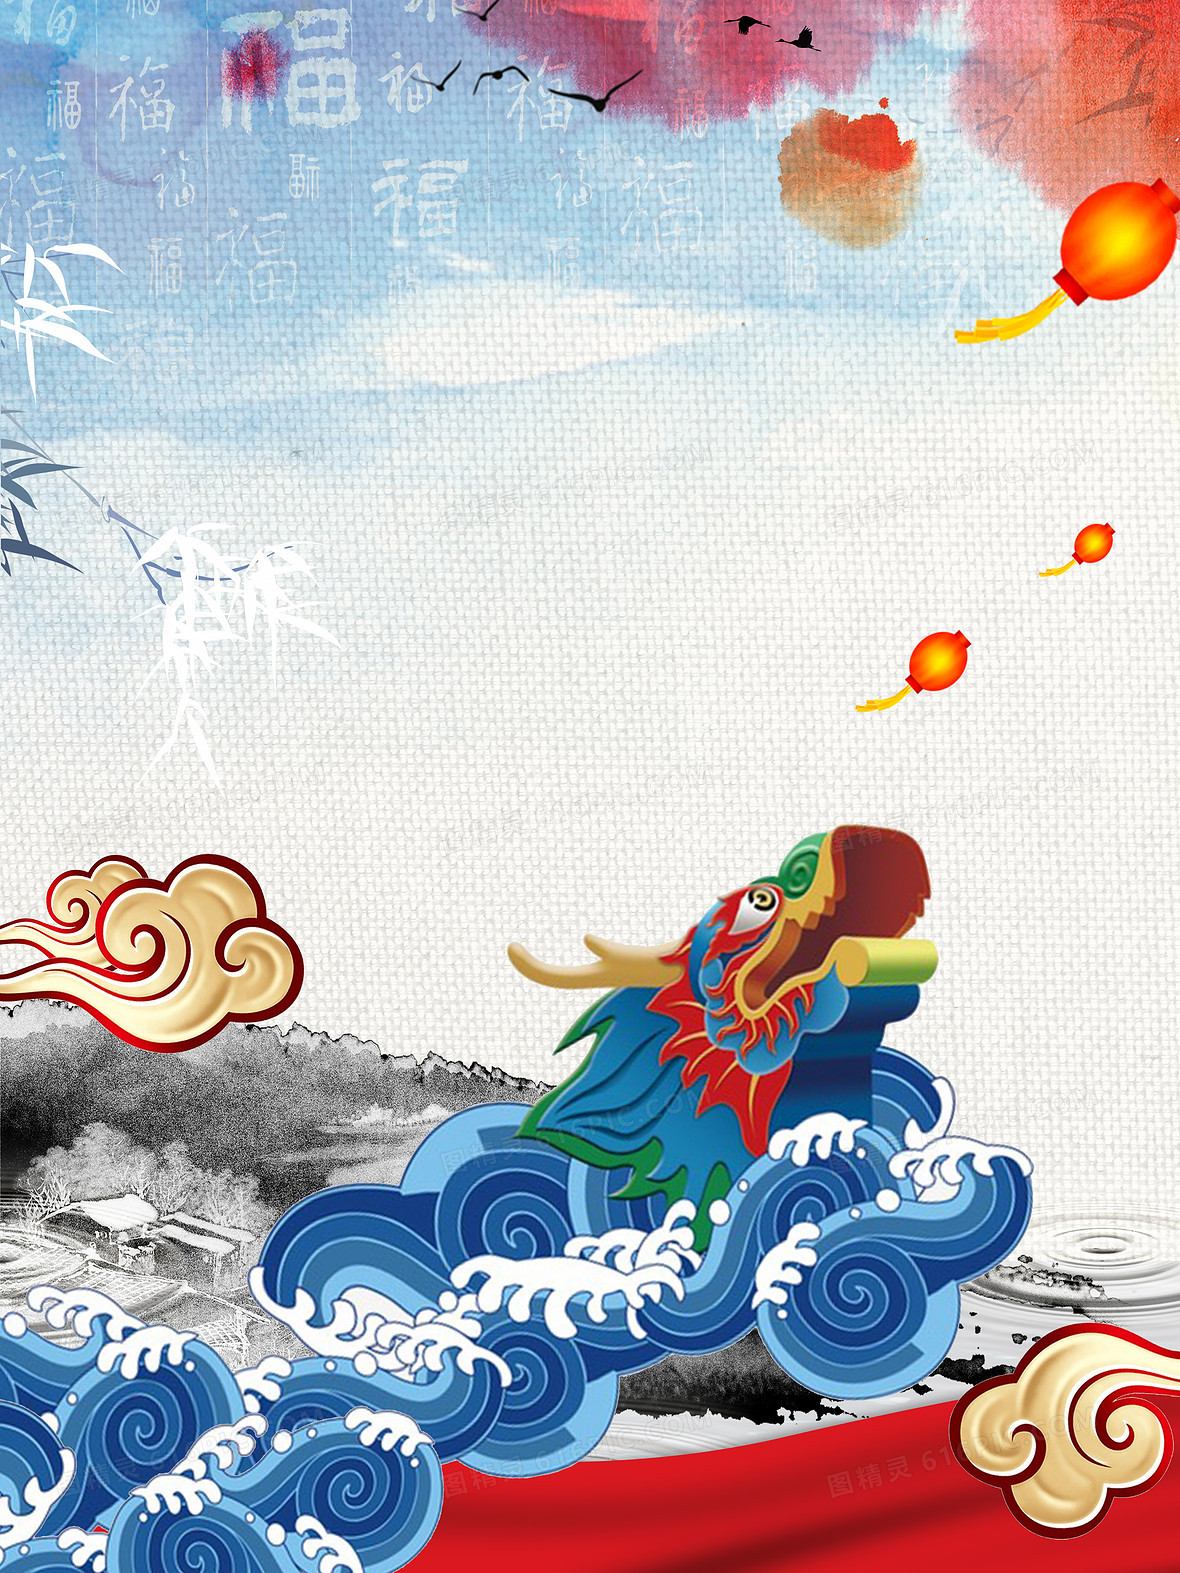 中国传统节日2月2龙抬头海报背景素材背景图片下载 5669x7559像素jpg格式 编号14yfro7n1 图精灵